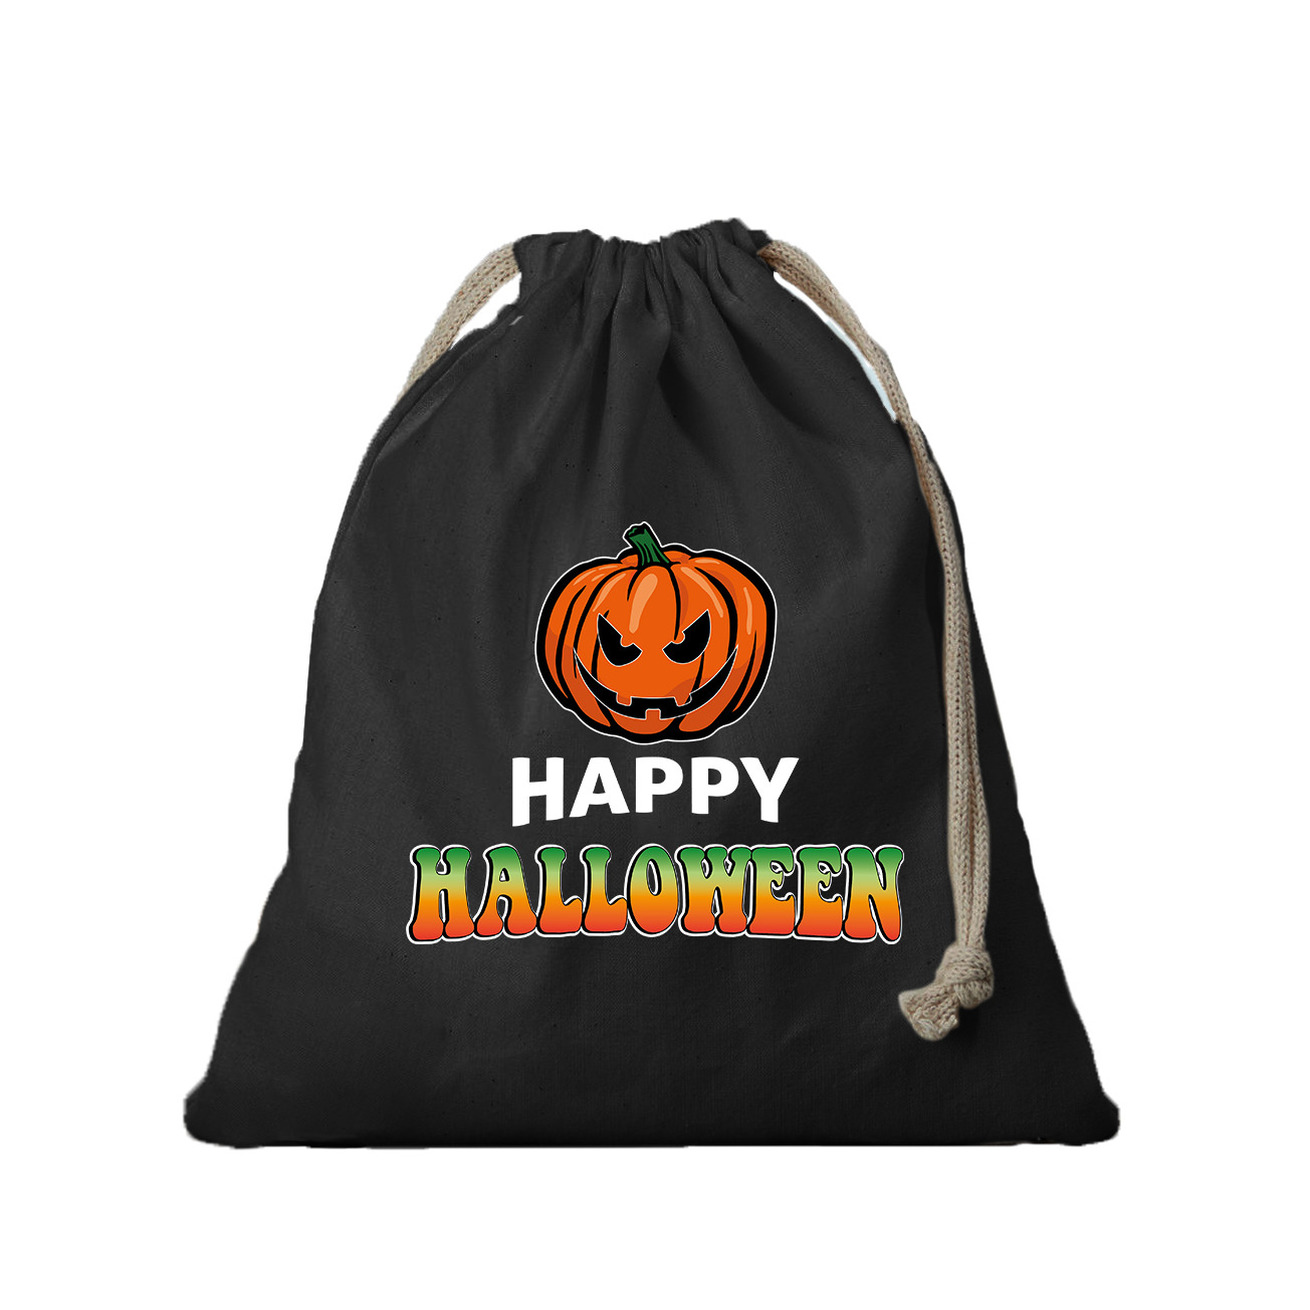 3x Katoenen happy halloween snoep tasje met pompoen zwart 25 x 30 cm